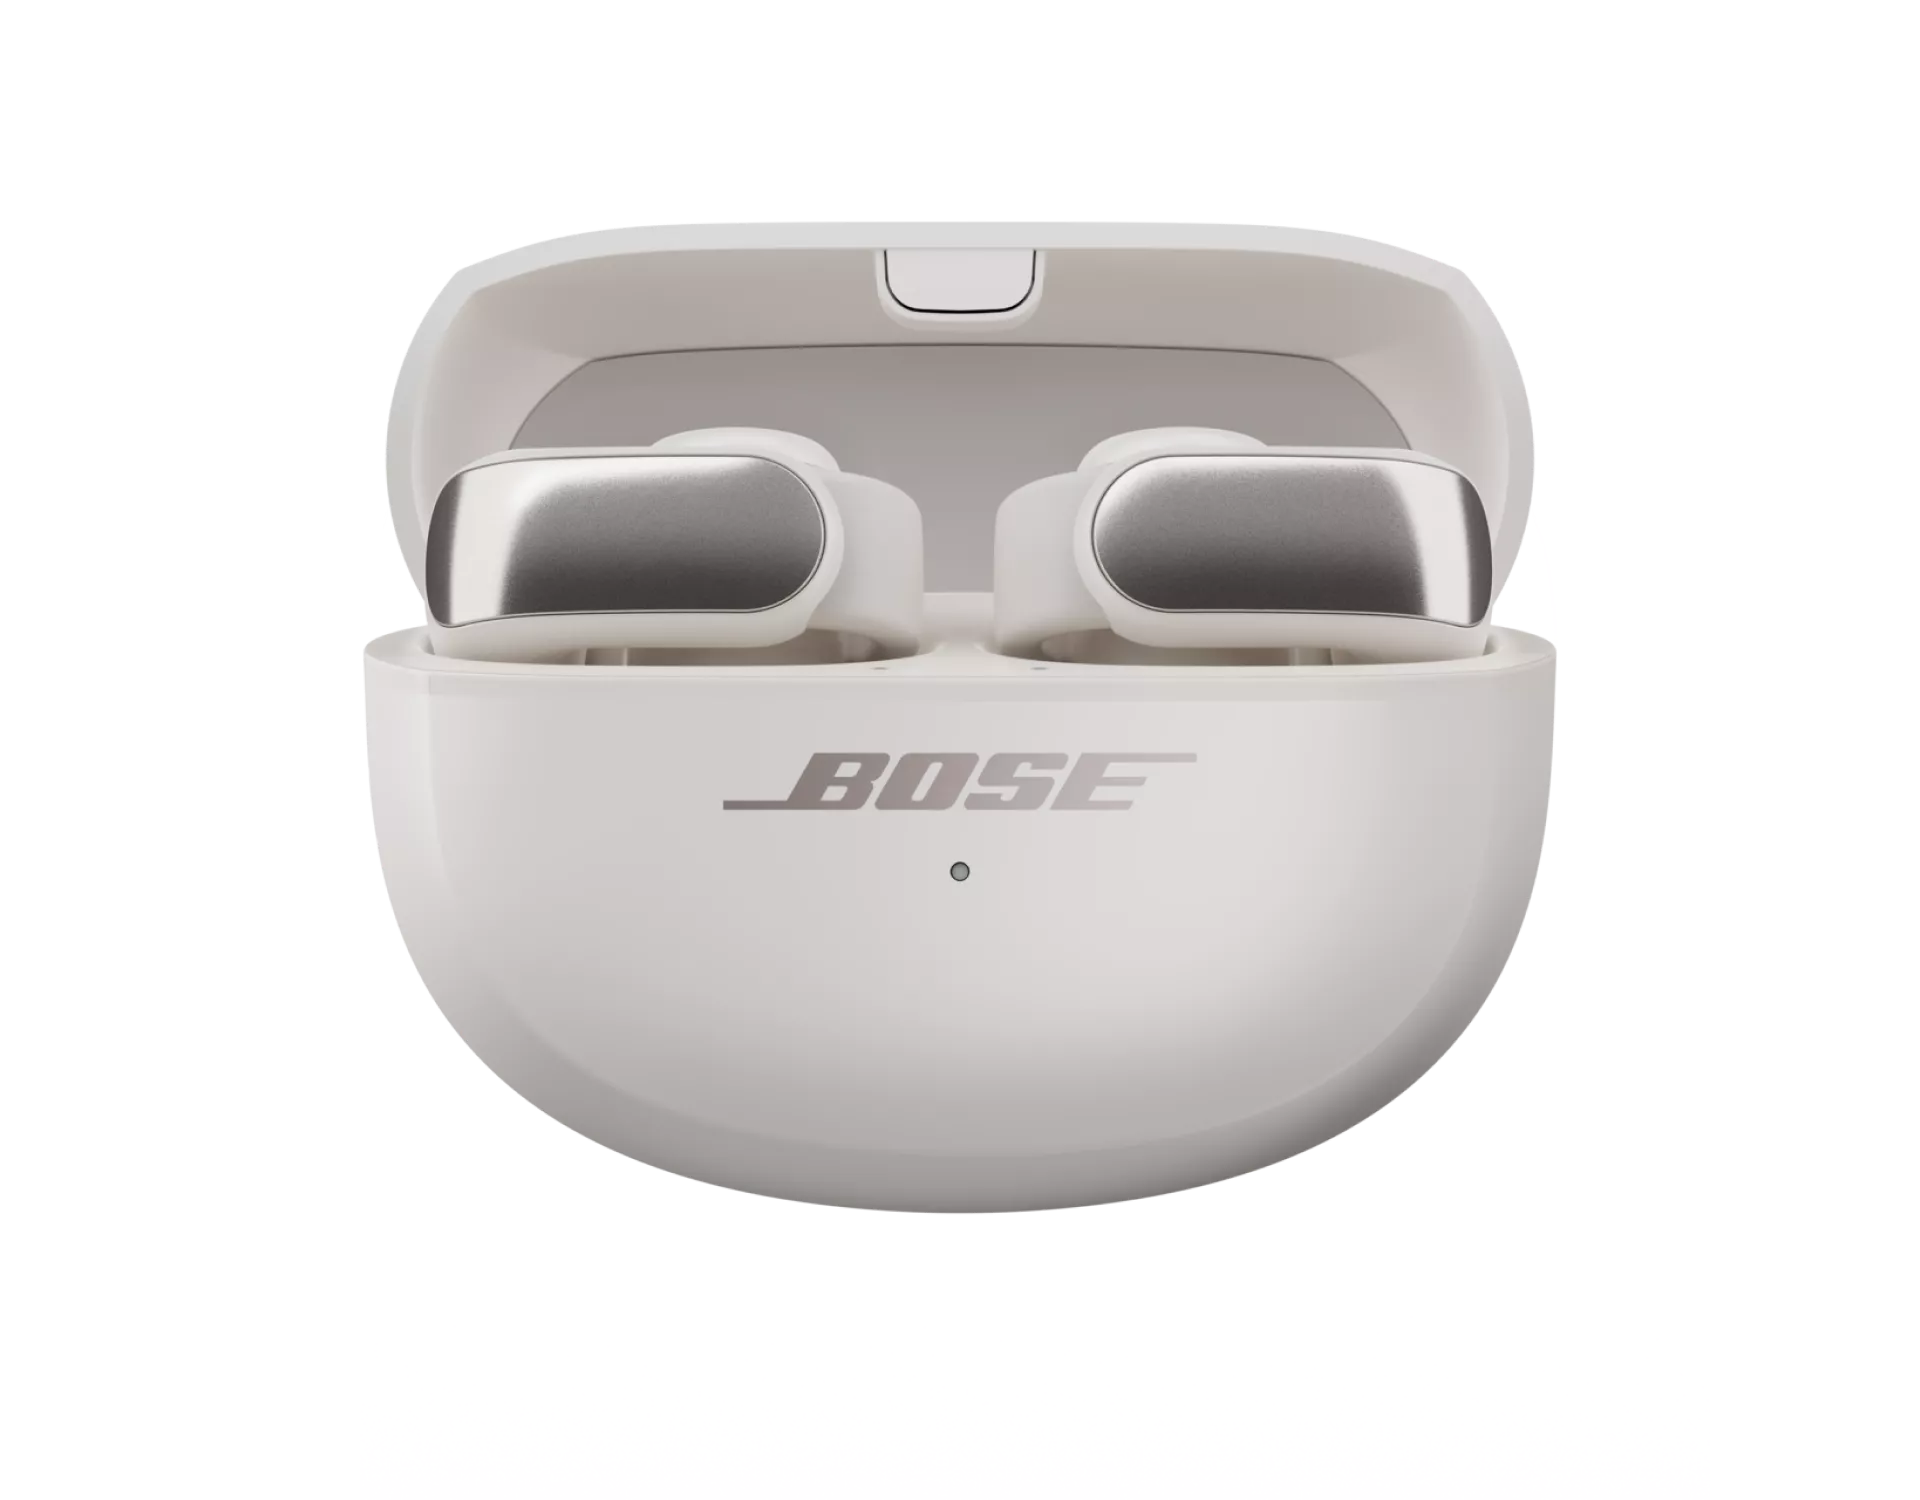 Les écouteurs oreilles libres Bose Ultra dans leur étui de chargement